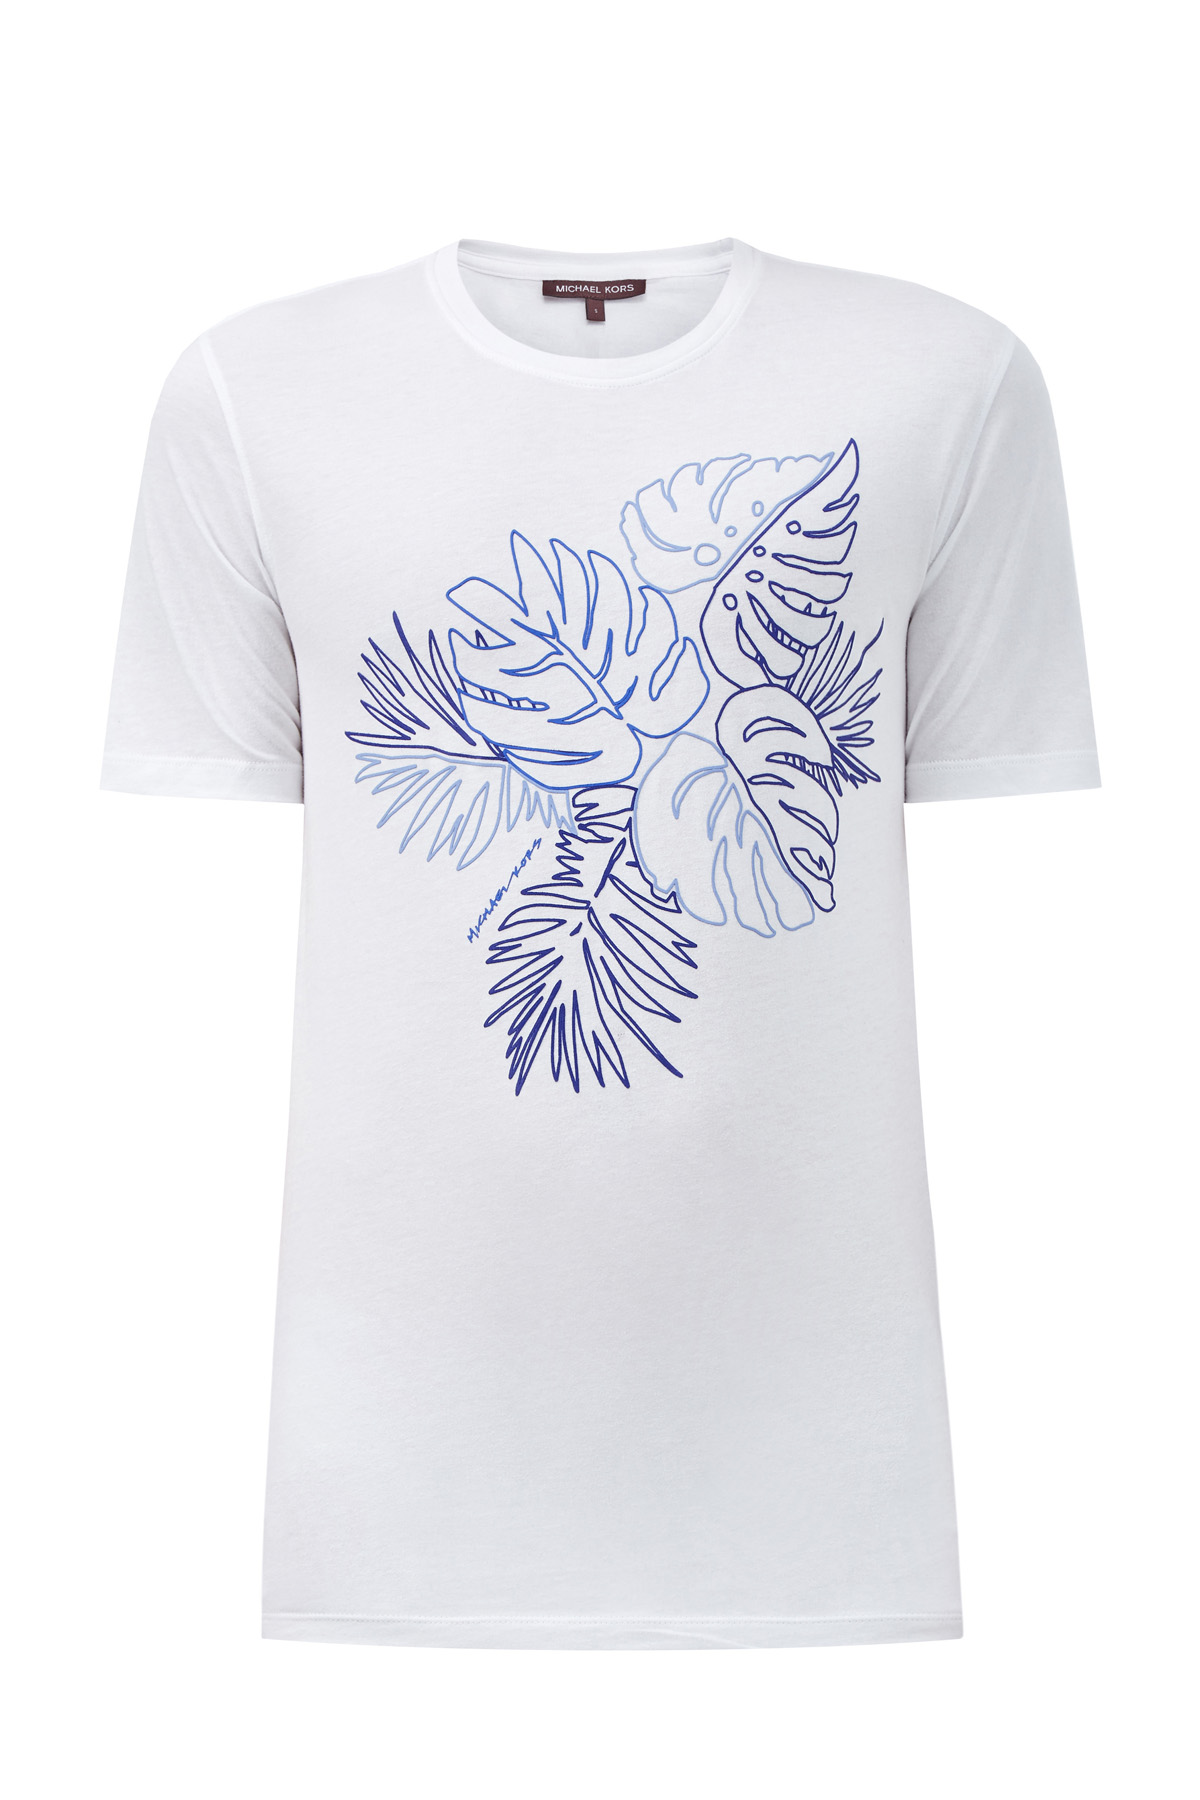 Хлопковая футболка с объемным принтом MICHAEL KORS, цвет белый, размер XL;2XL - фото 1